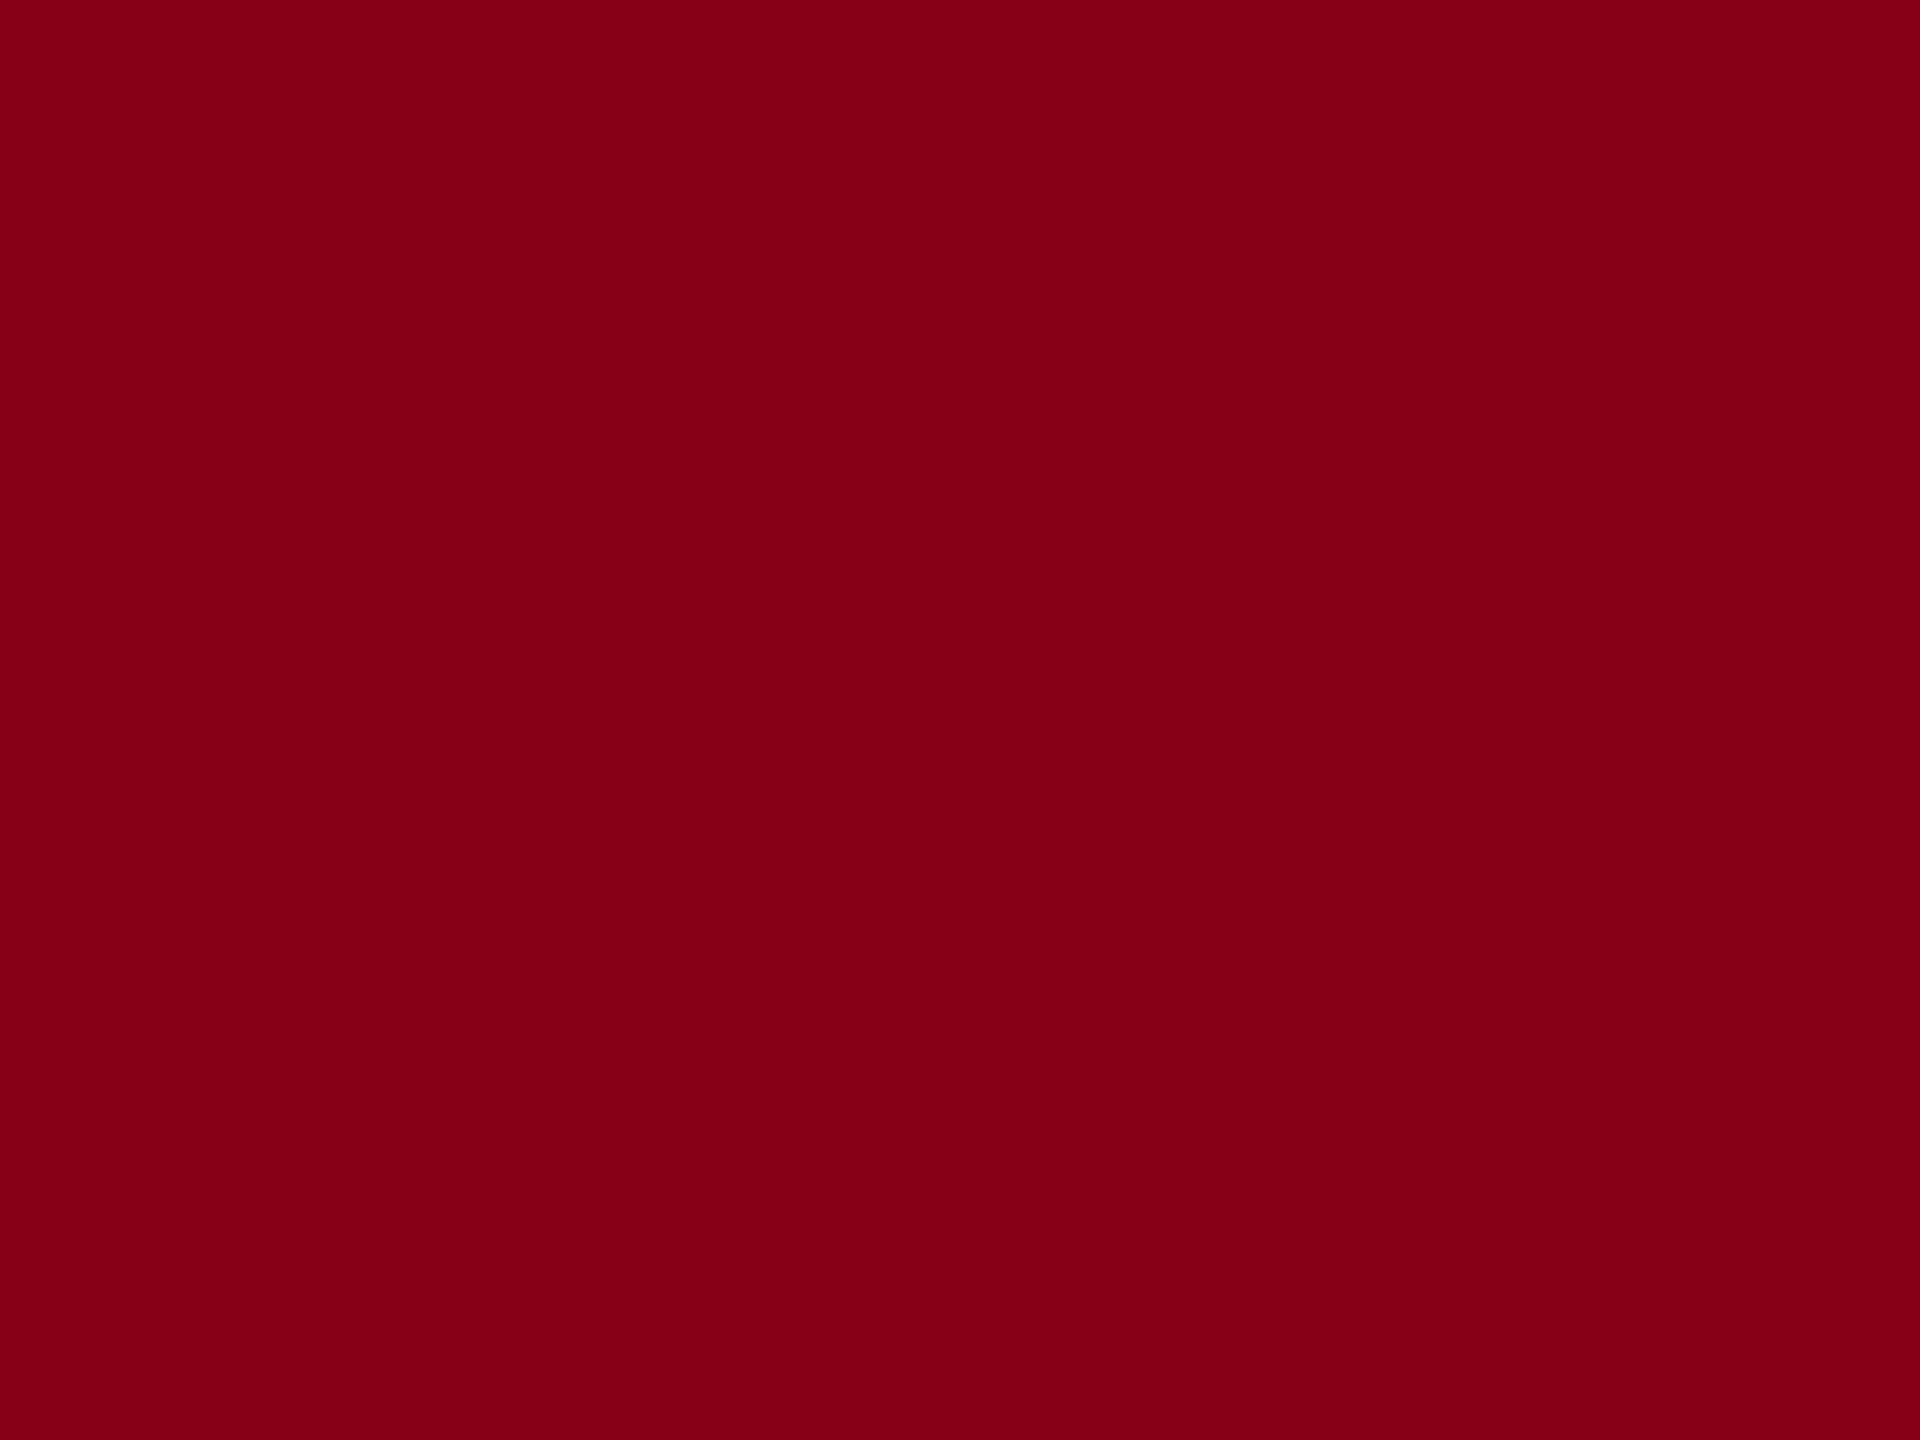 1920x1440 Dark Red Background